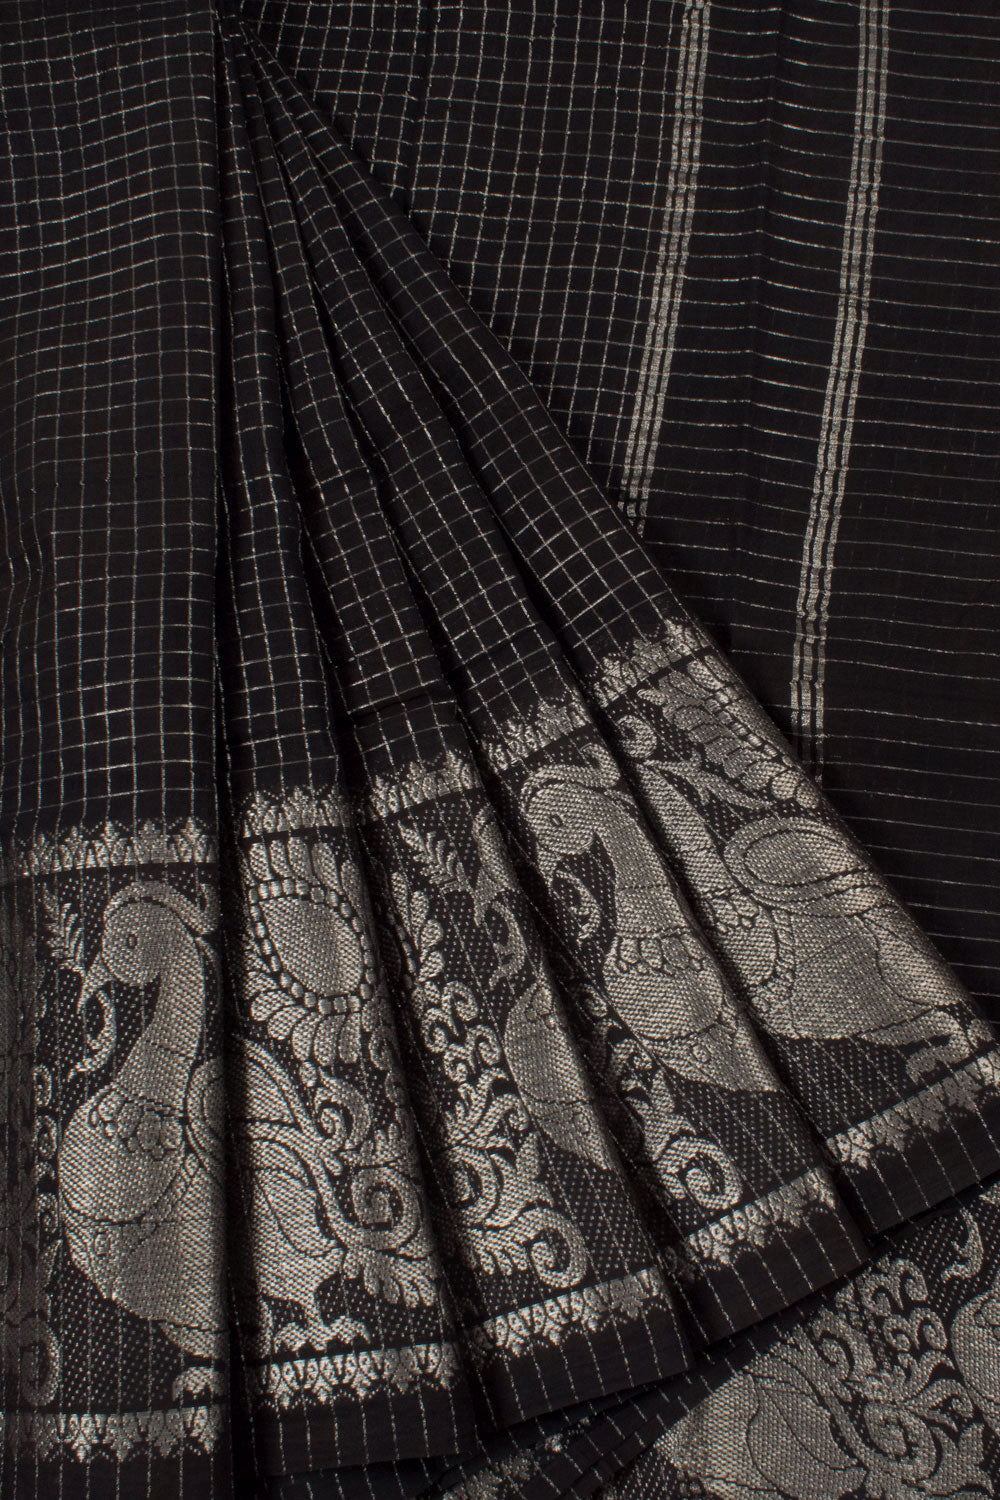 Handloom Sungudi Cotton Saree with Silver Checks Design and Peacock Border